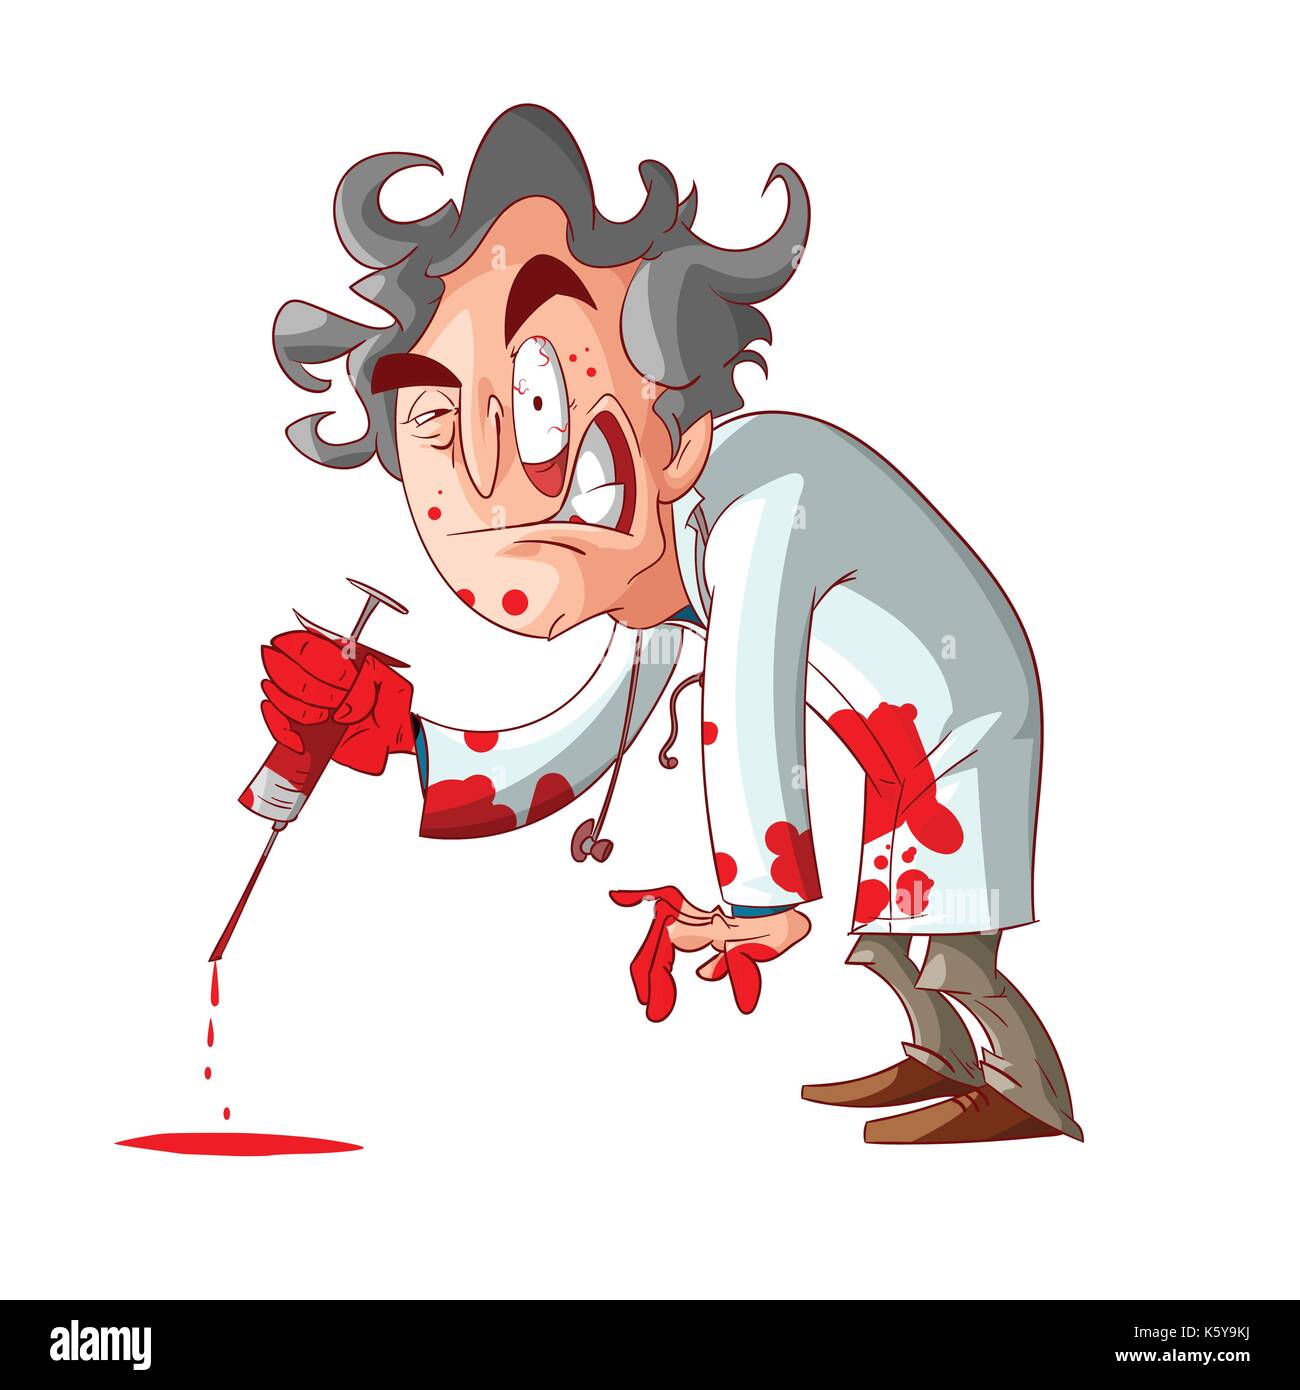 Colorata illustrazione vettoriale di un cartoon crazy medico, tenendo una sanguinosa ago, e macchie di sangue sulle sue mani e vestiti. Illustrazione Vettoriale